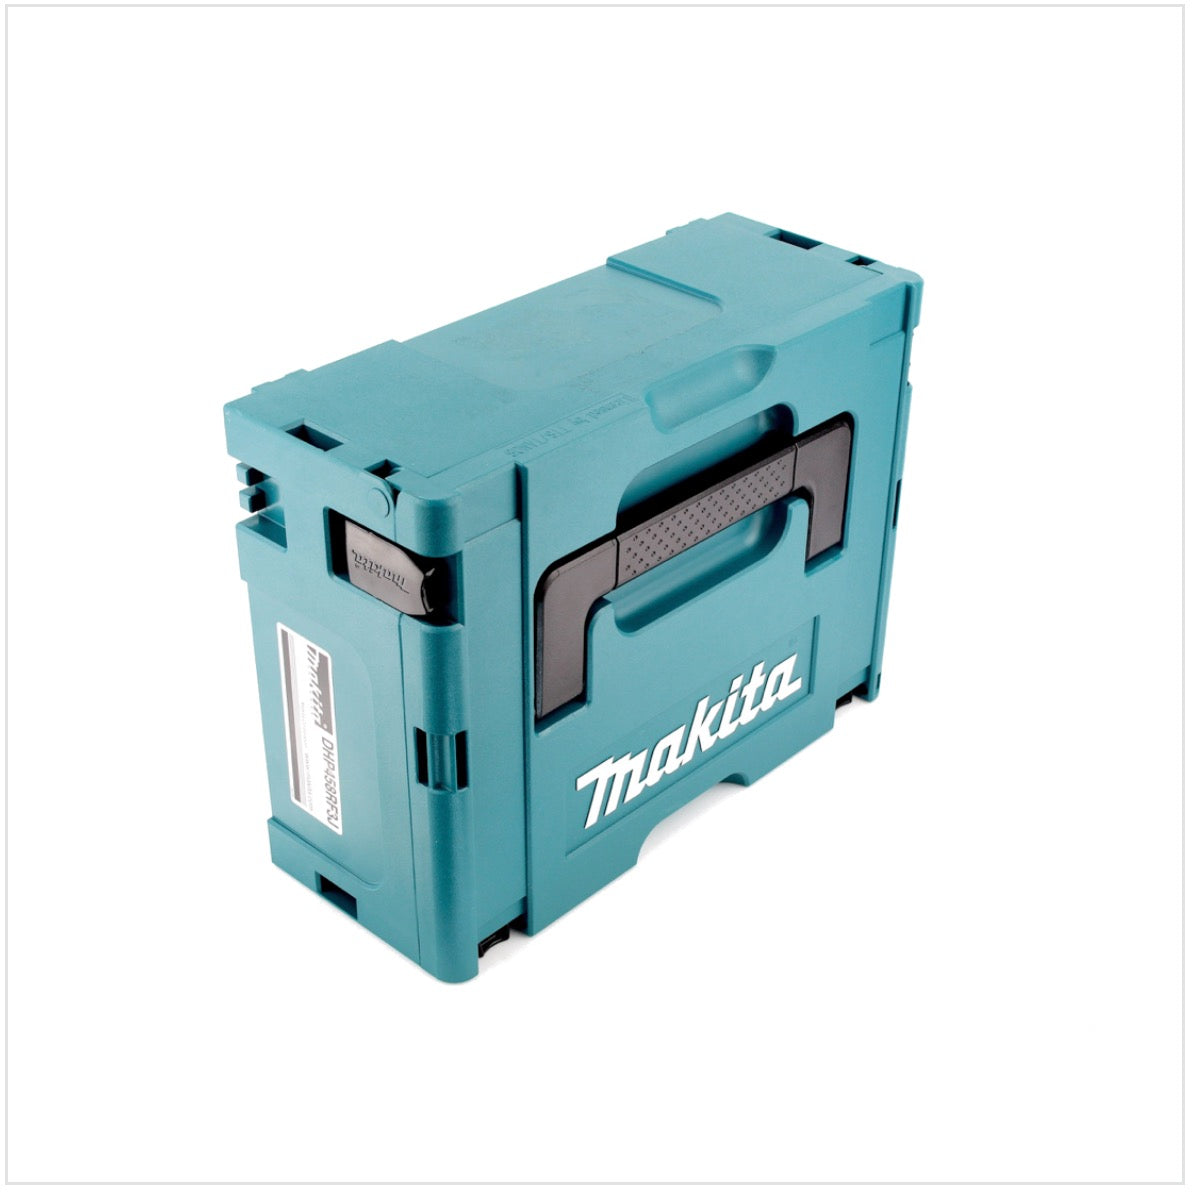 3x Makita Kunststoff Werkzeug Koffer MAKPAC 2 - ohne Einlage